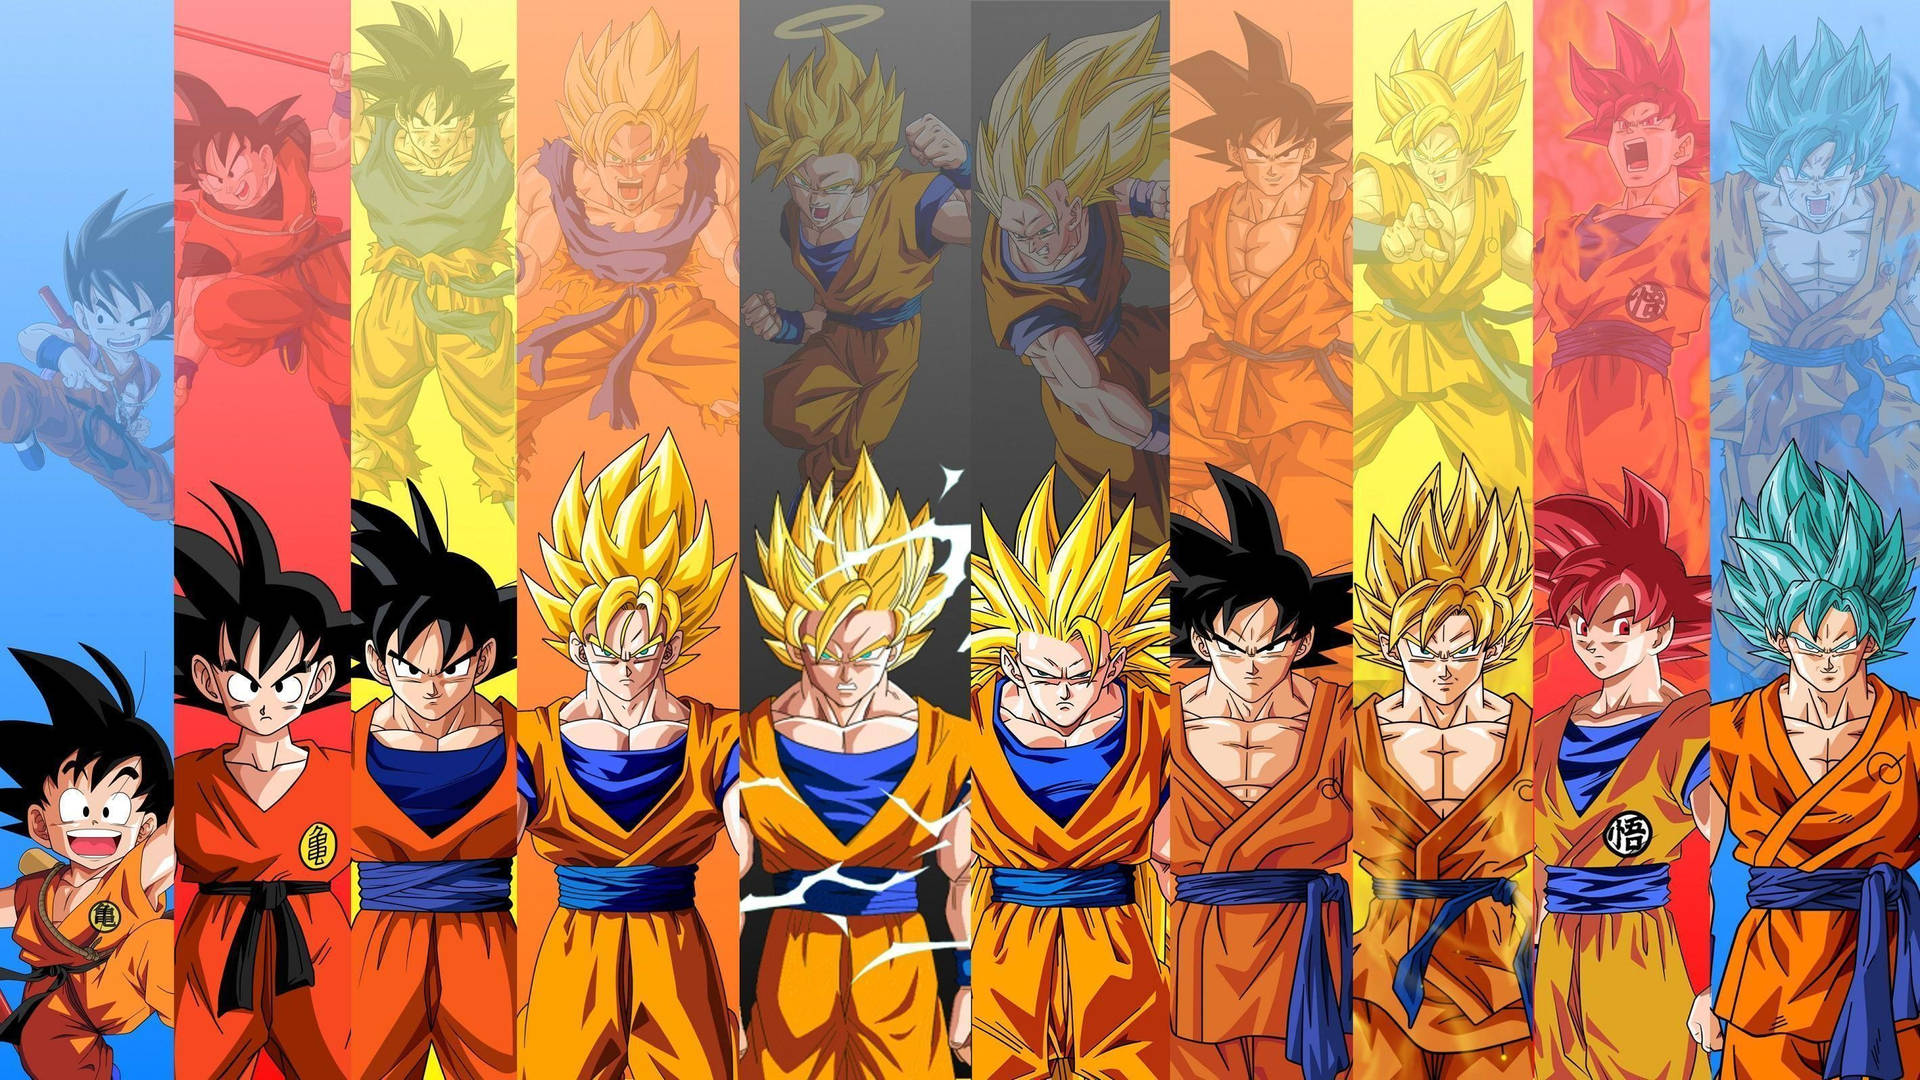 “Son Goku transforms into a Super Sayin to protect the Dragon Balls!” Wallpaper